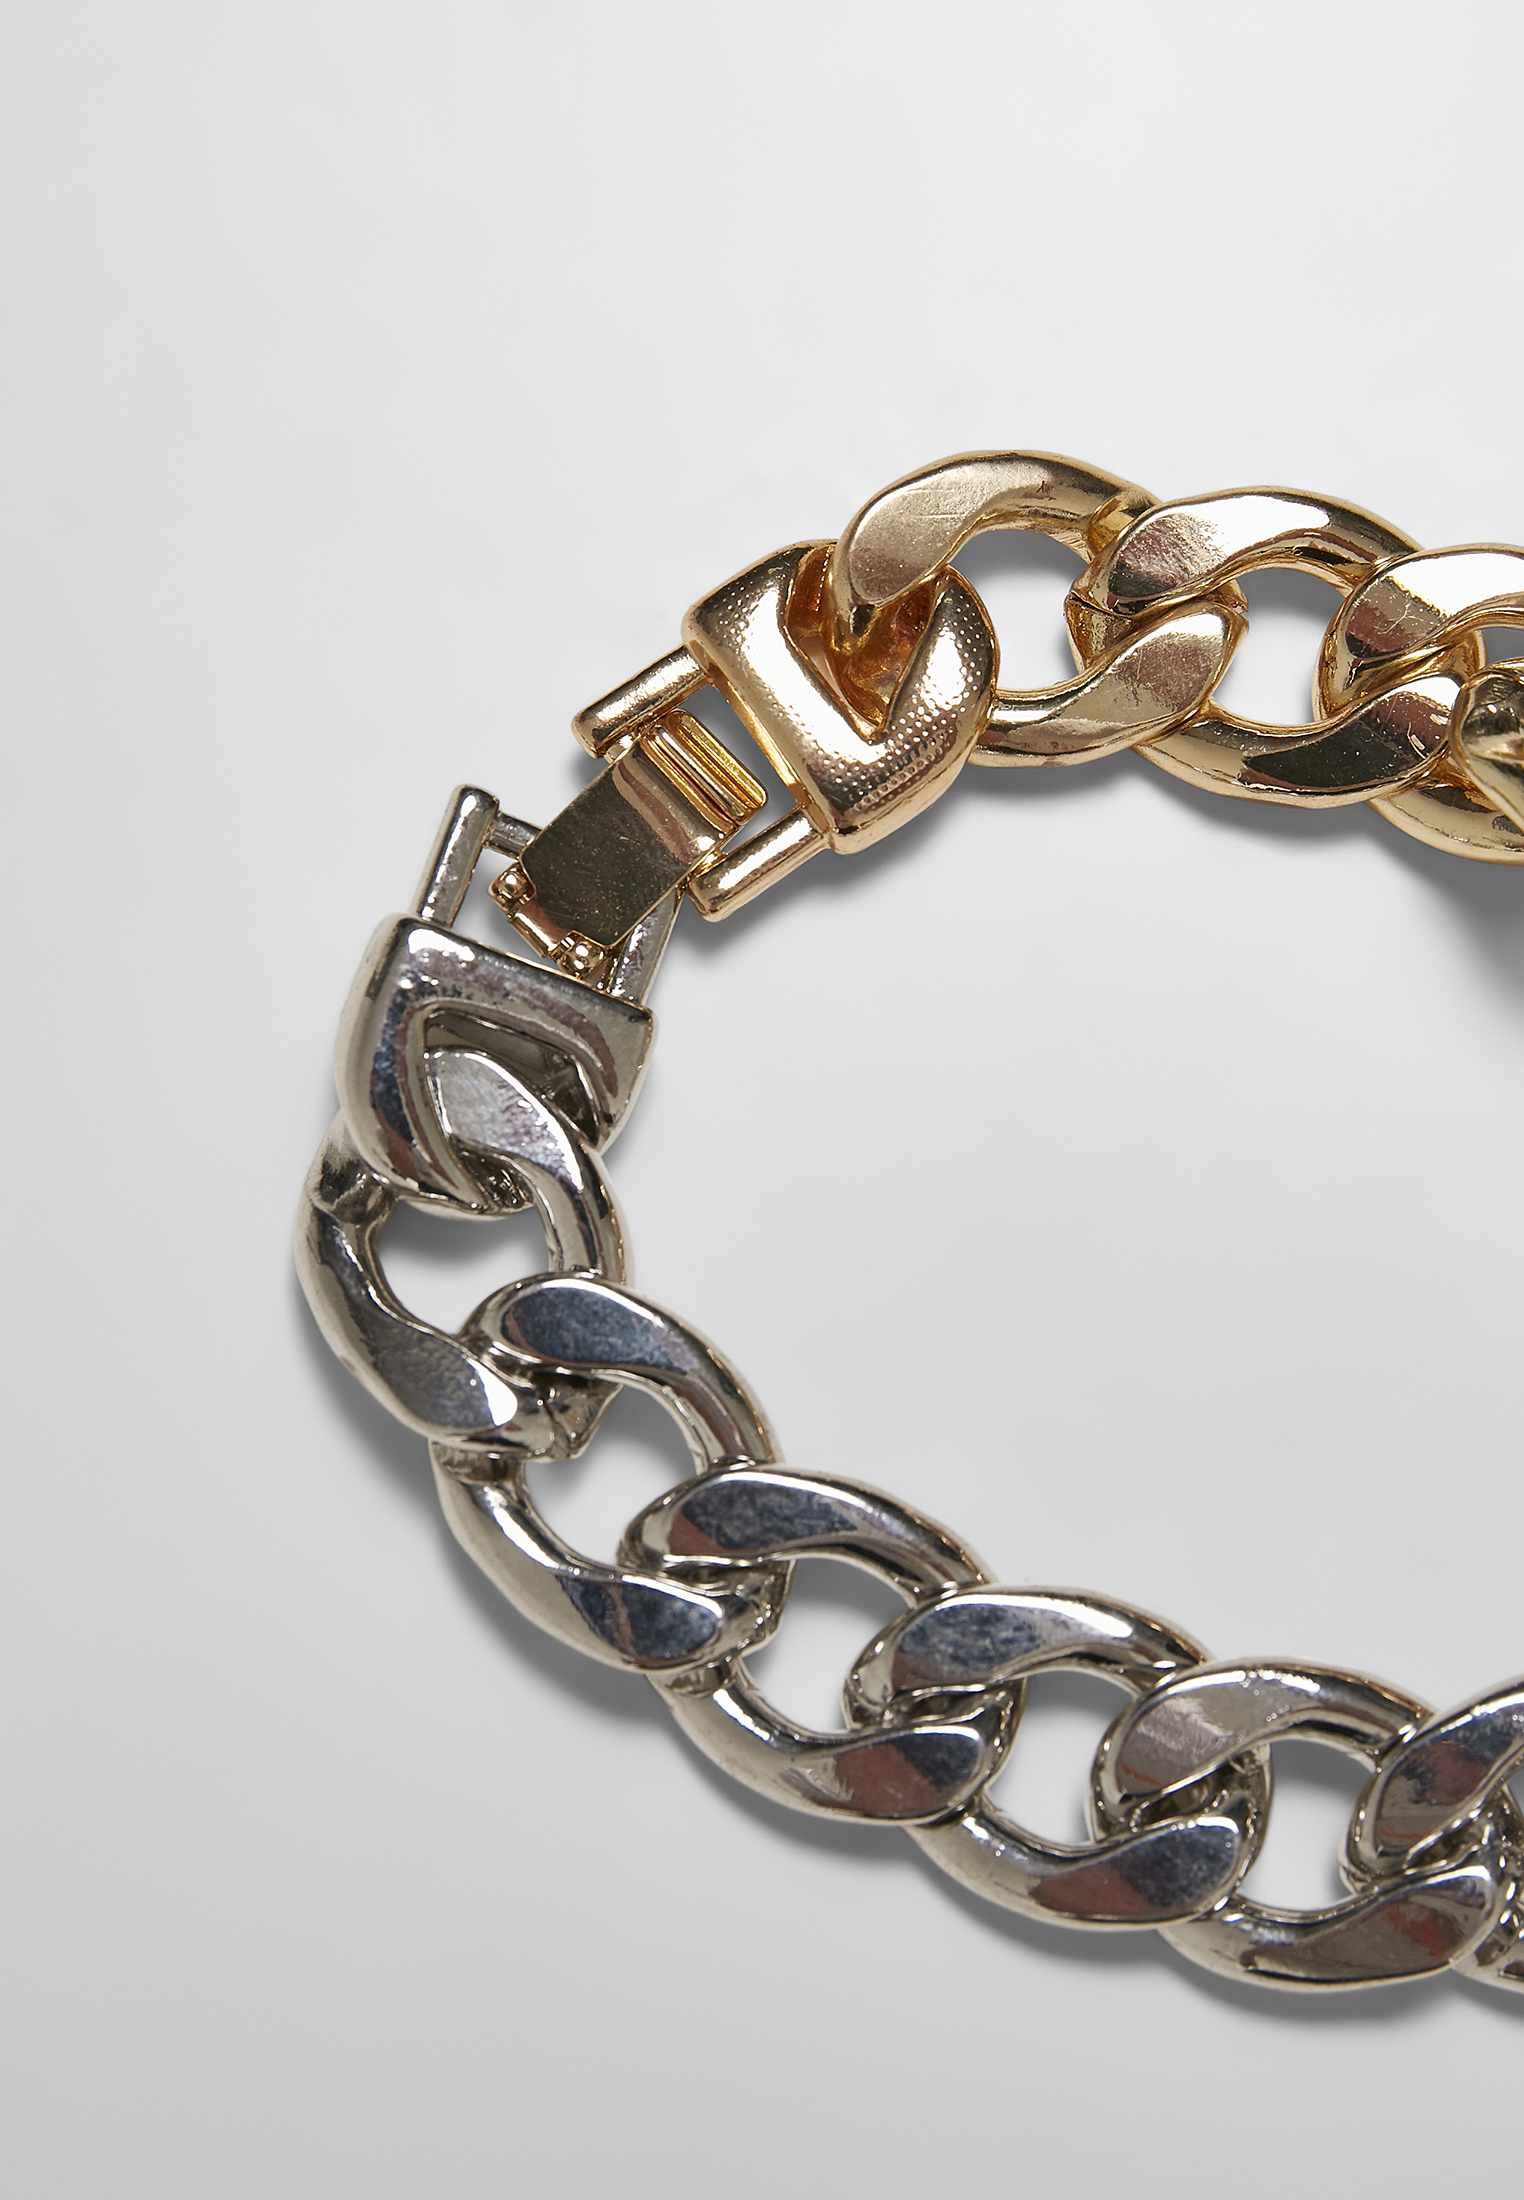 Schmuck Heavy Two-Tone Bracelet in Farbe gold/silver